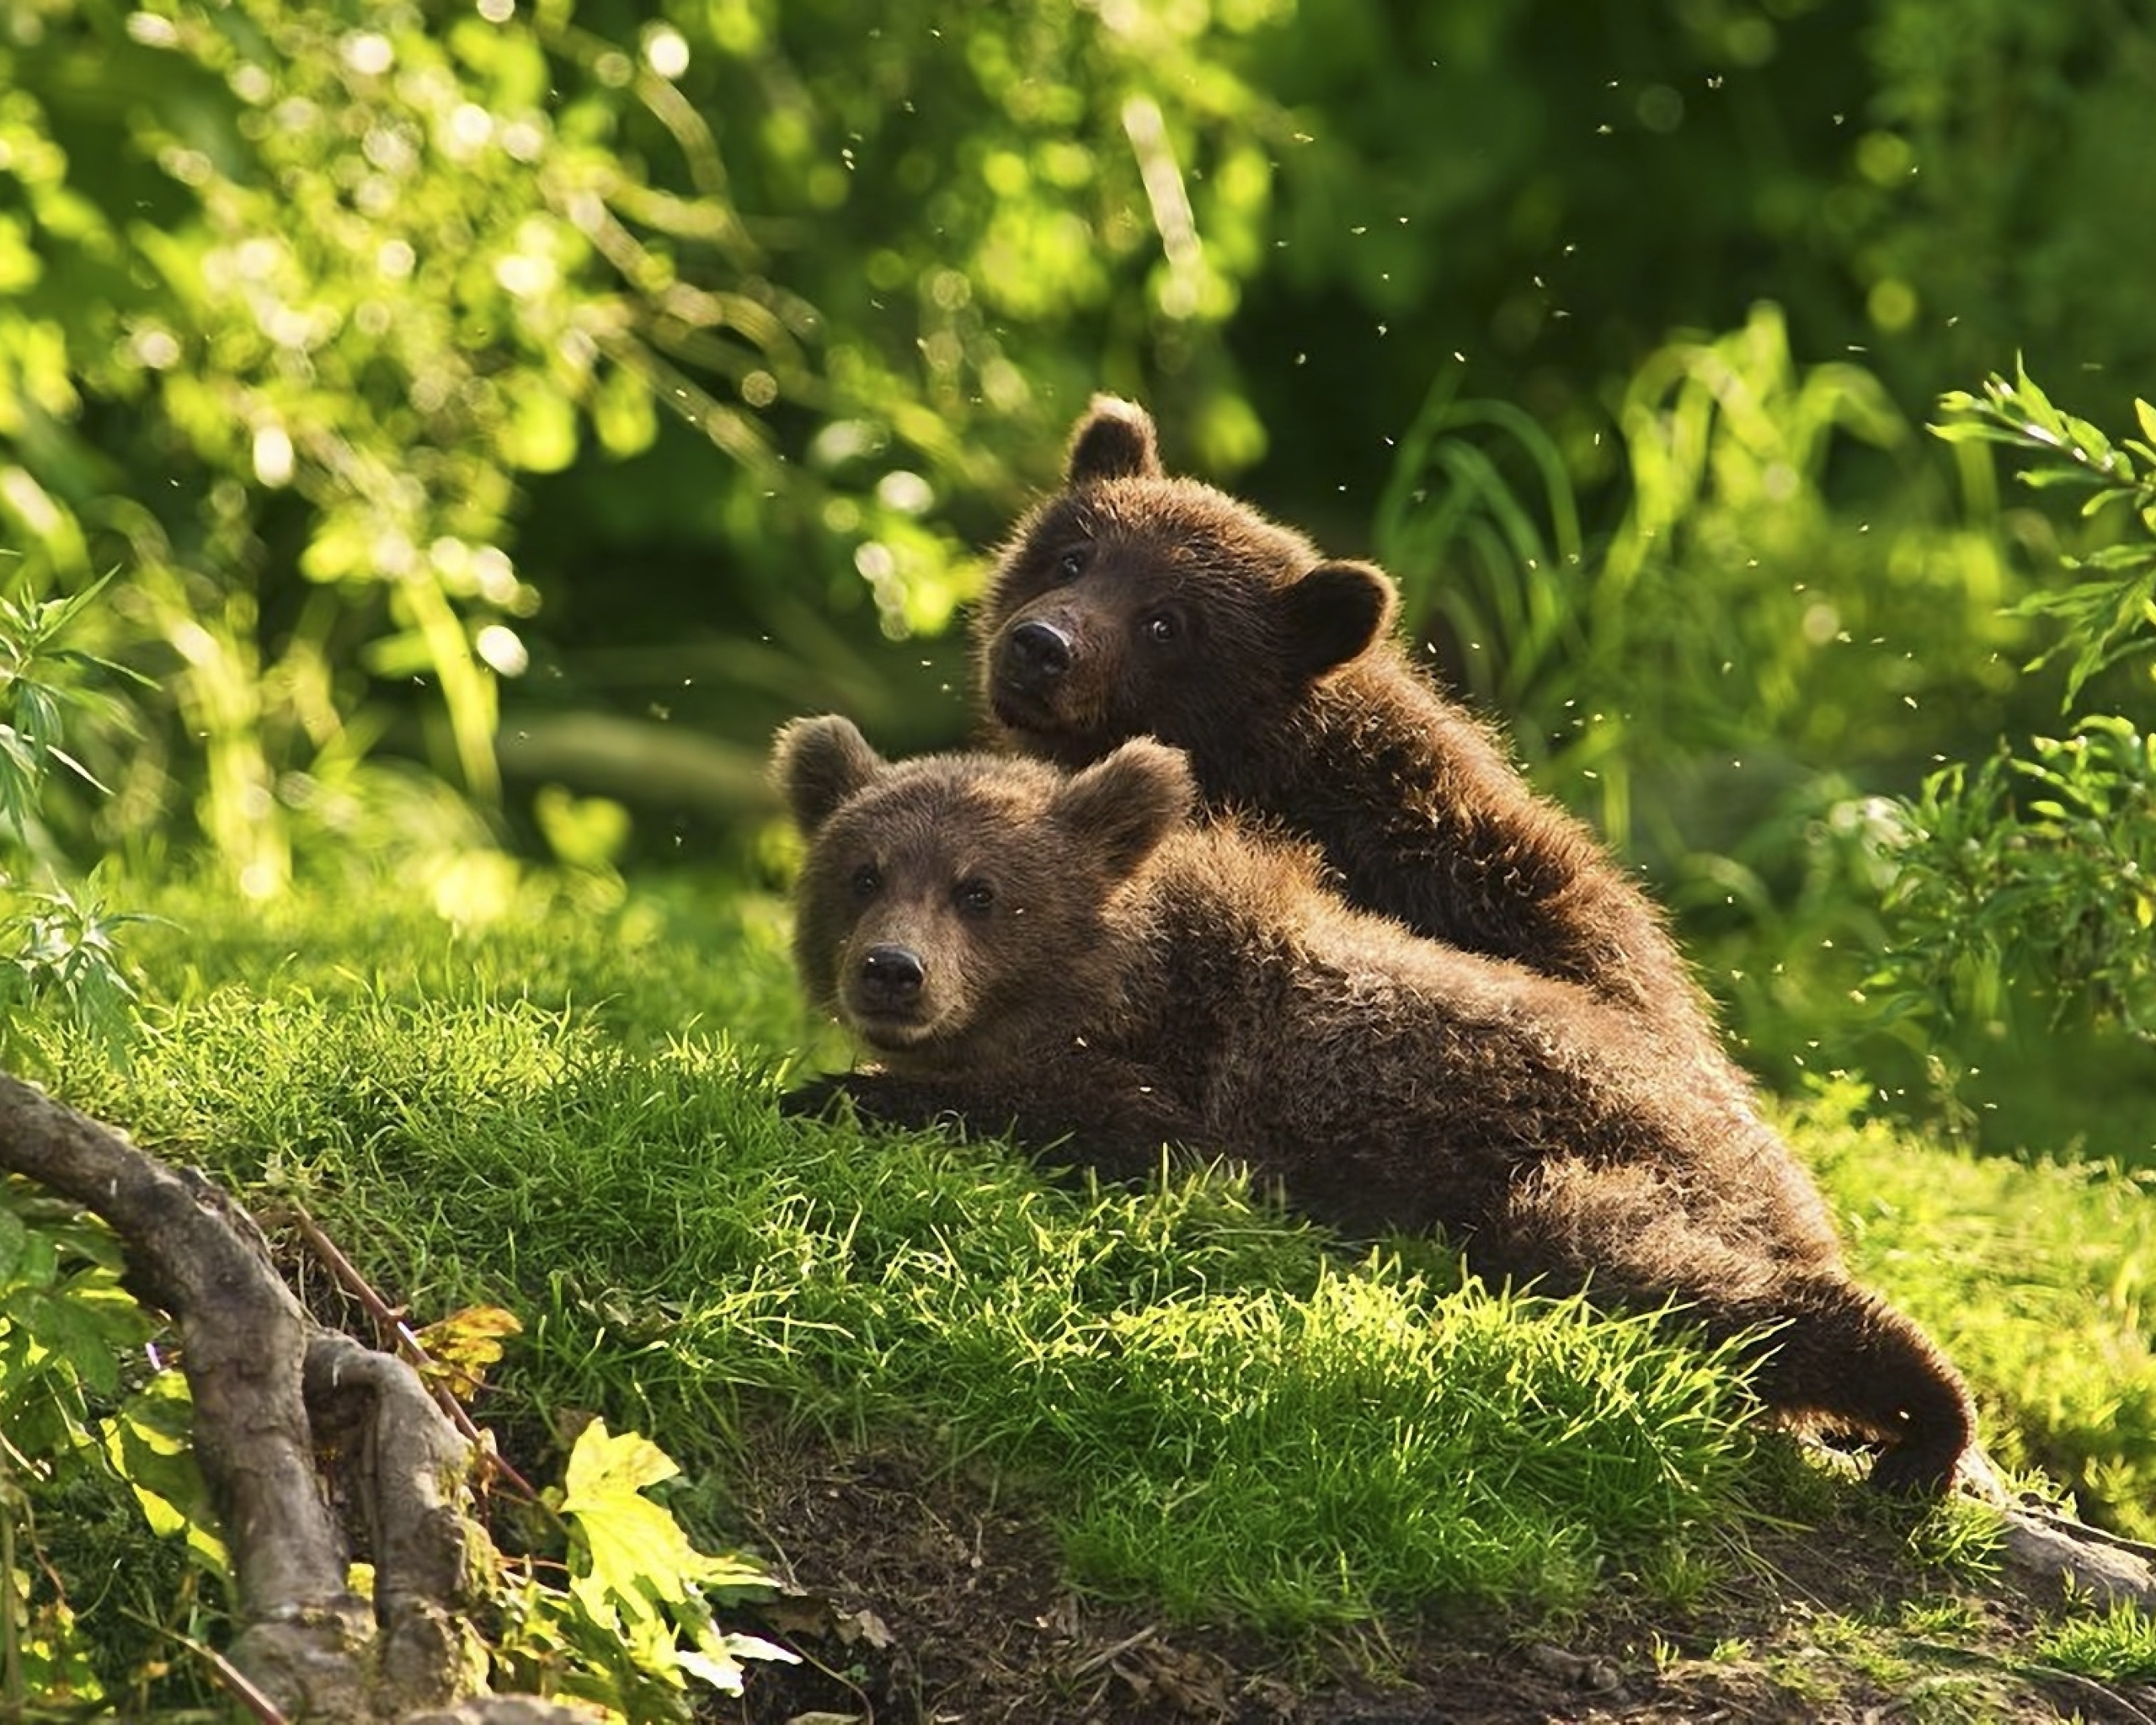 Картинка: Медвежата, два, хищник, лес, трава, деревья, лето, холм